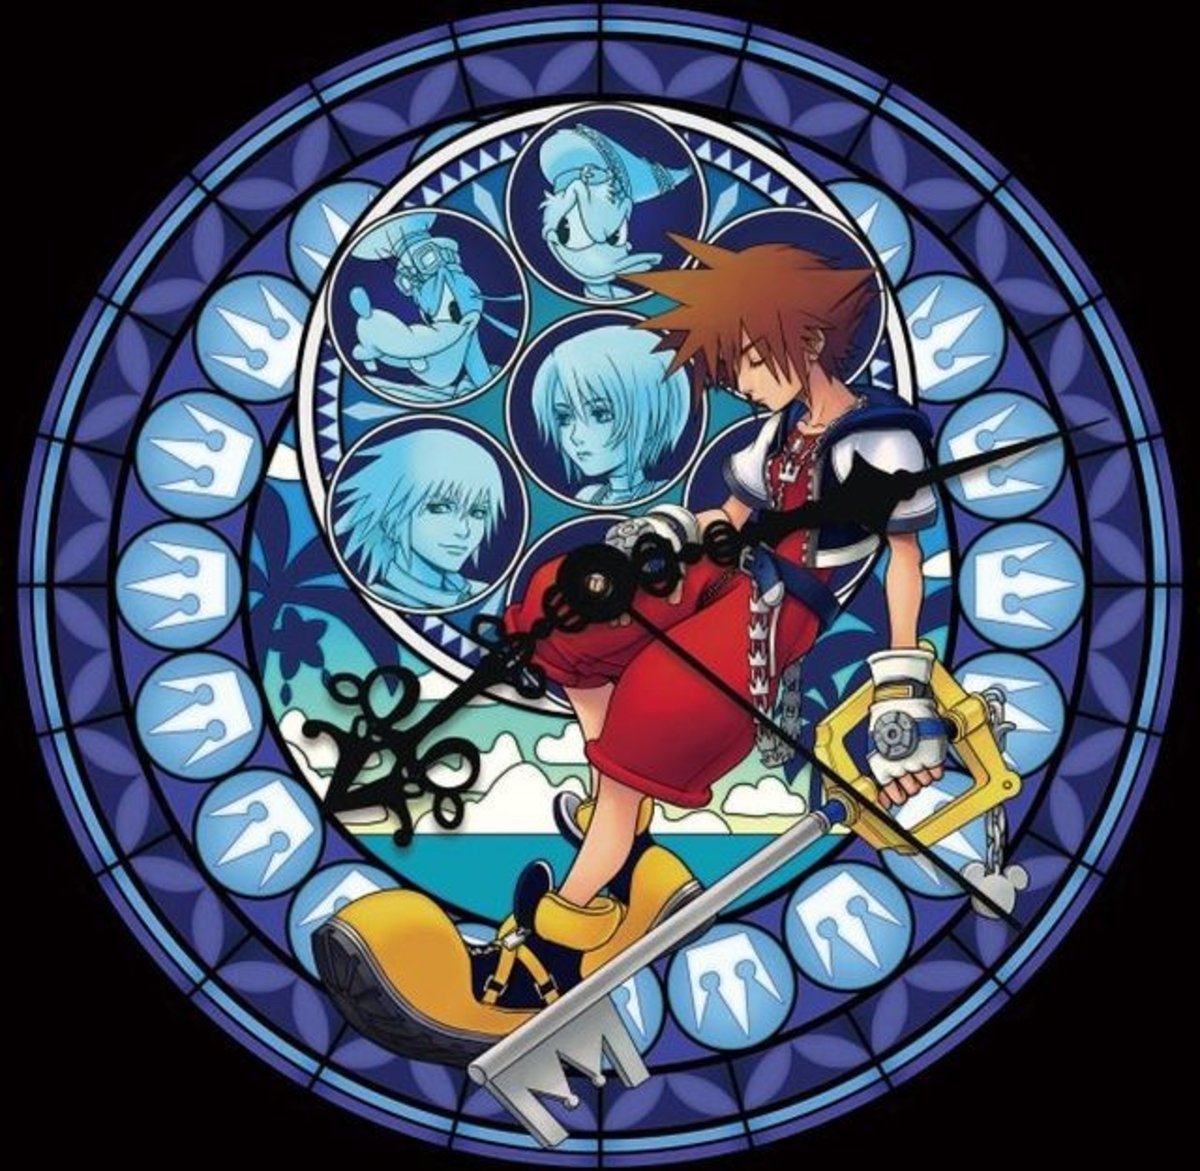 Kingdom Hearts se prepara para su 15 aniversario con una curiosa cuenta atrás